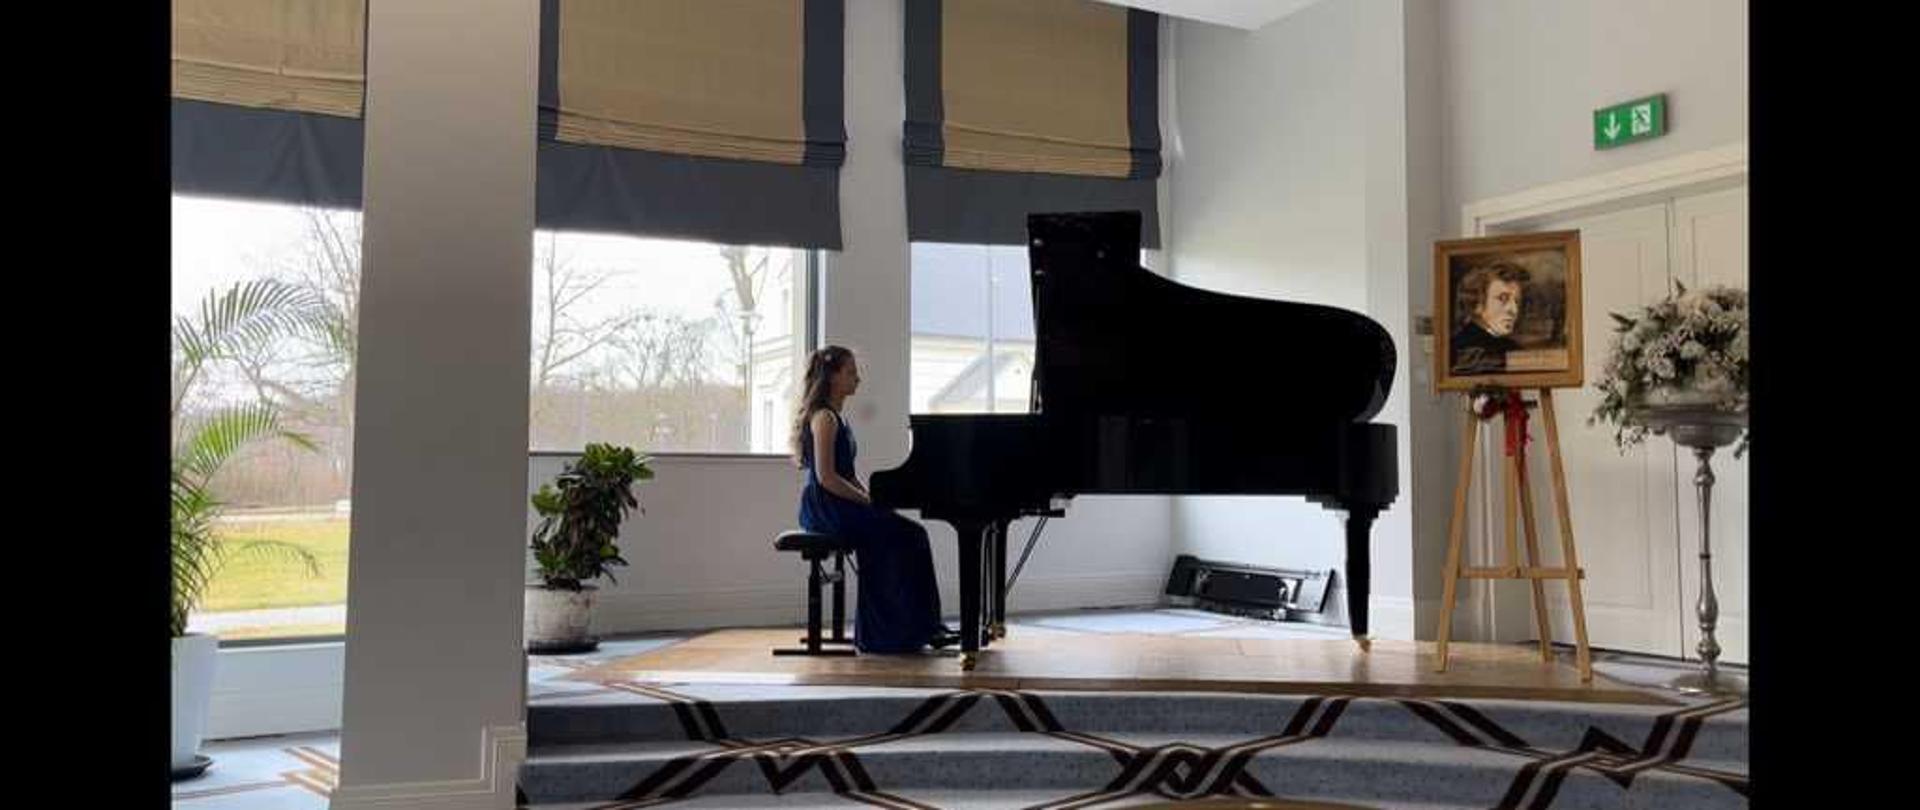 Pianistka siedzi przy fortepianie, w tle okna na ogórd, po prawej stronie portret Chopina na sztaludze i kwiaty, dywan w niebiesko-brązową kratę. 